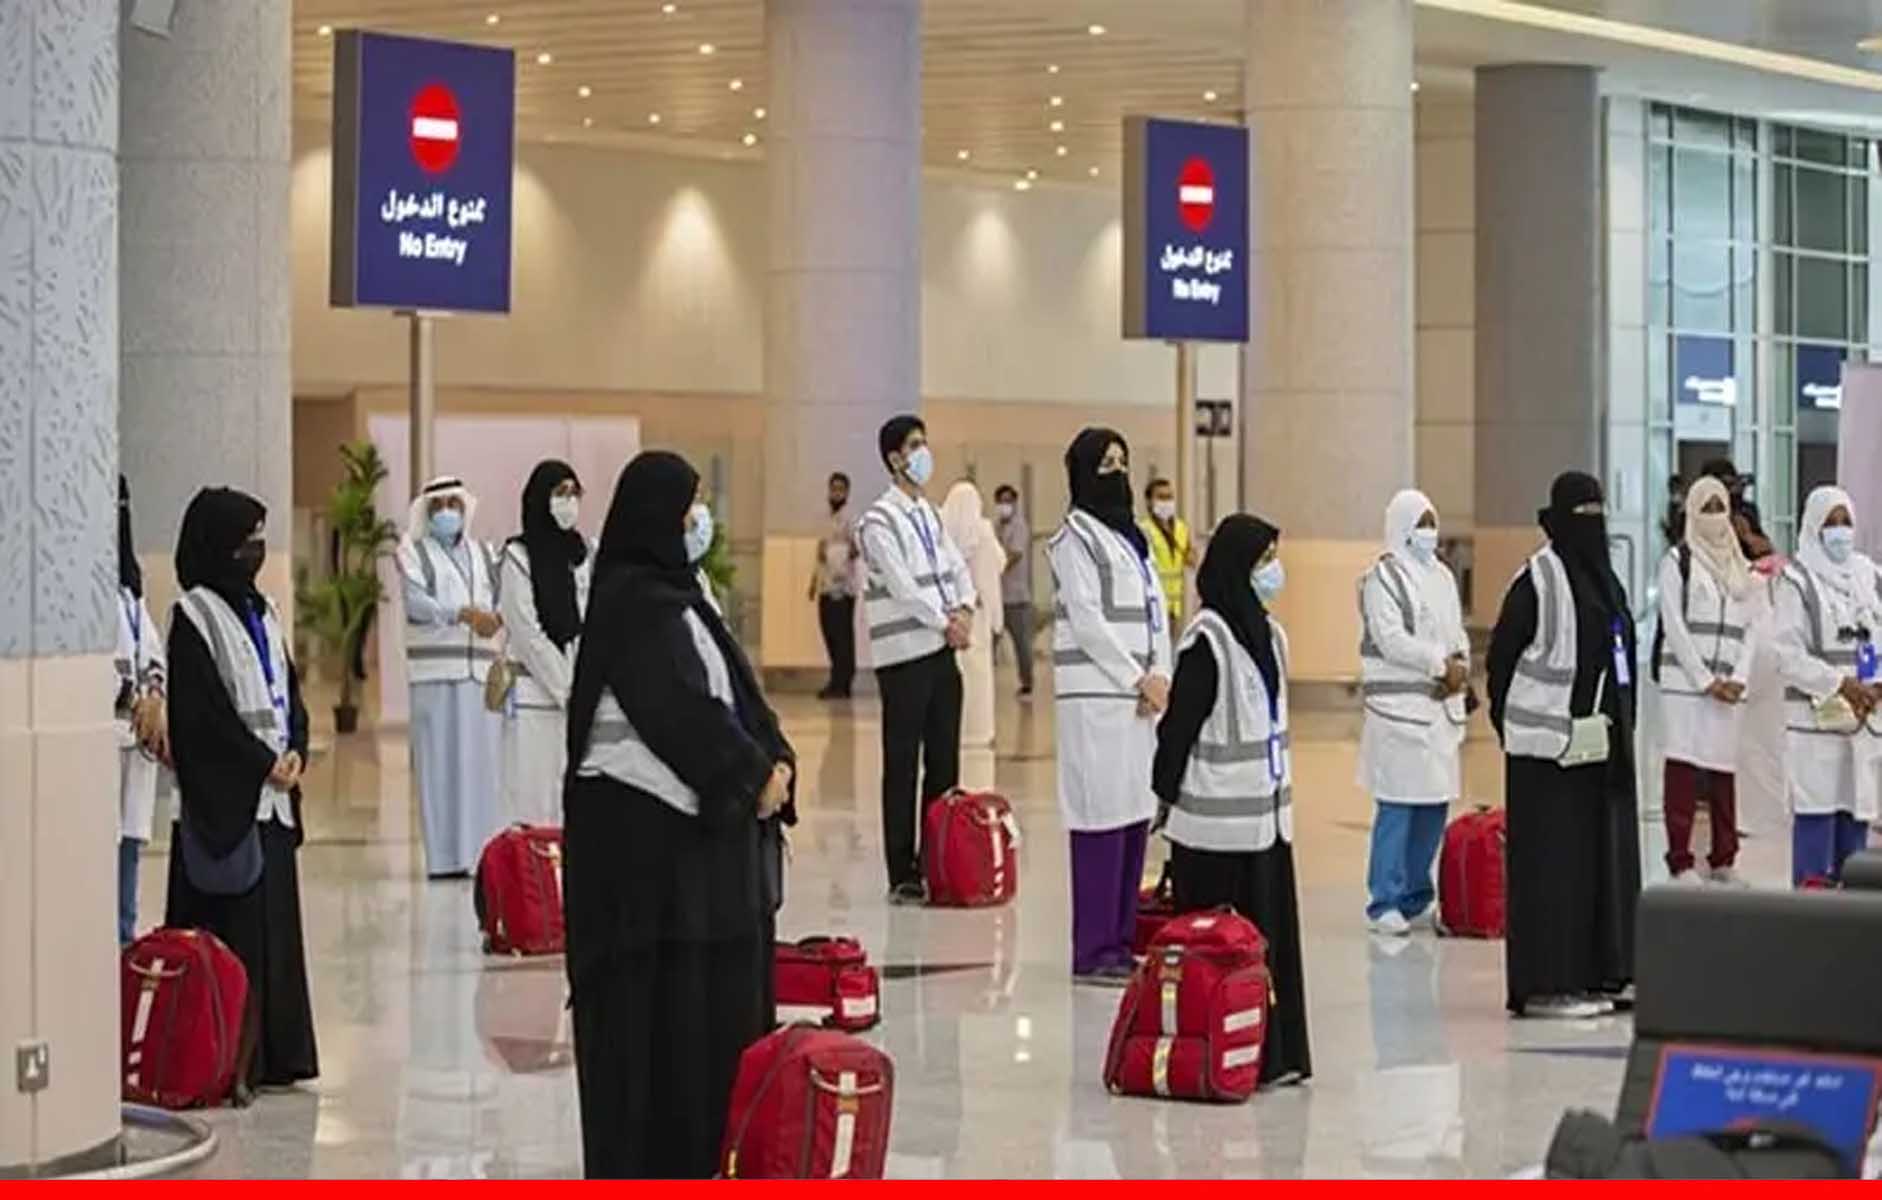 सऊदी अरब: रेड लिस्ट में शामिल देशों की यात्रा करने पर नागरिकों पर लगेगा तीन साल का ट्रैवल बैन